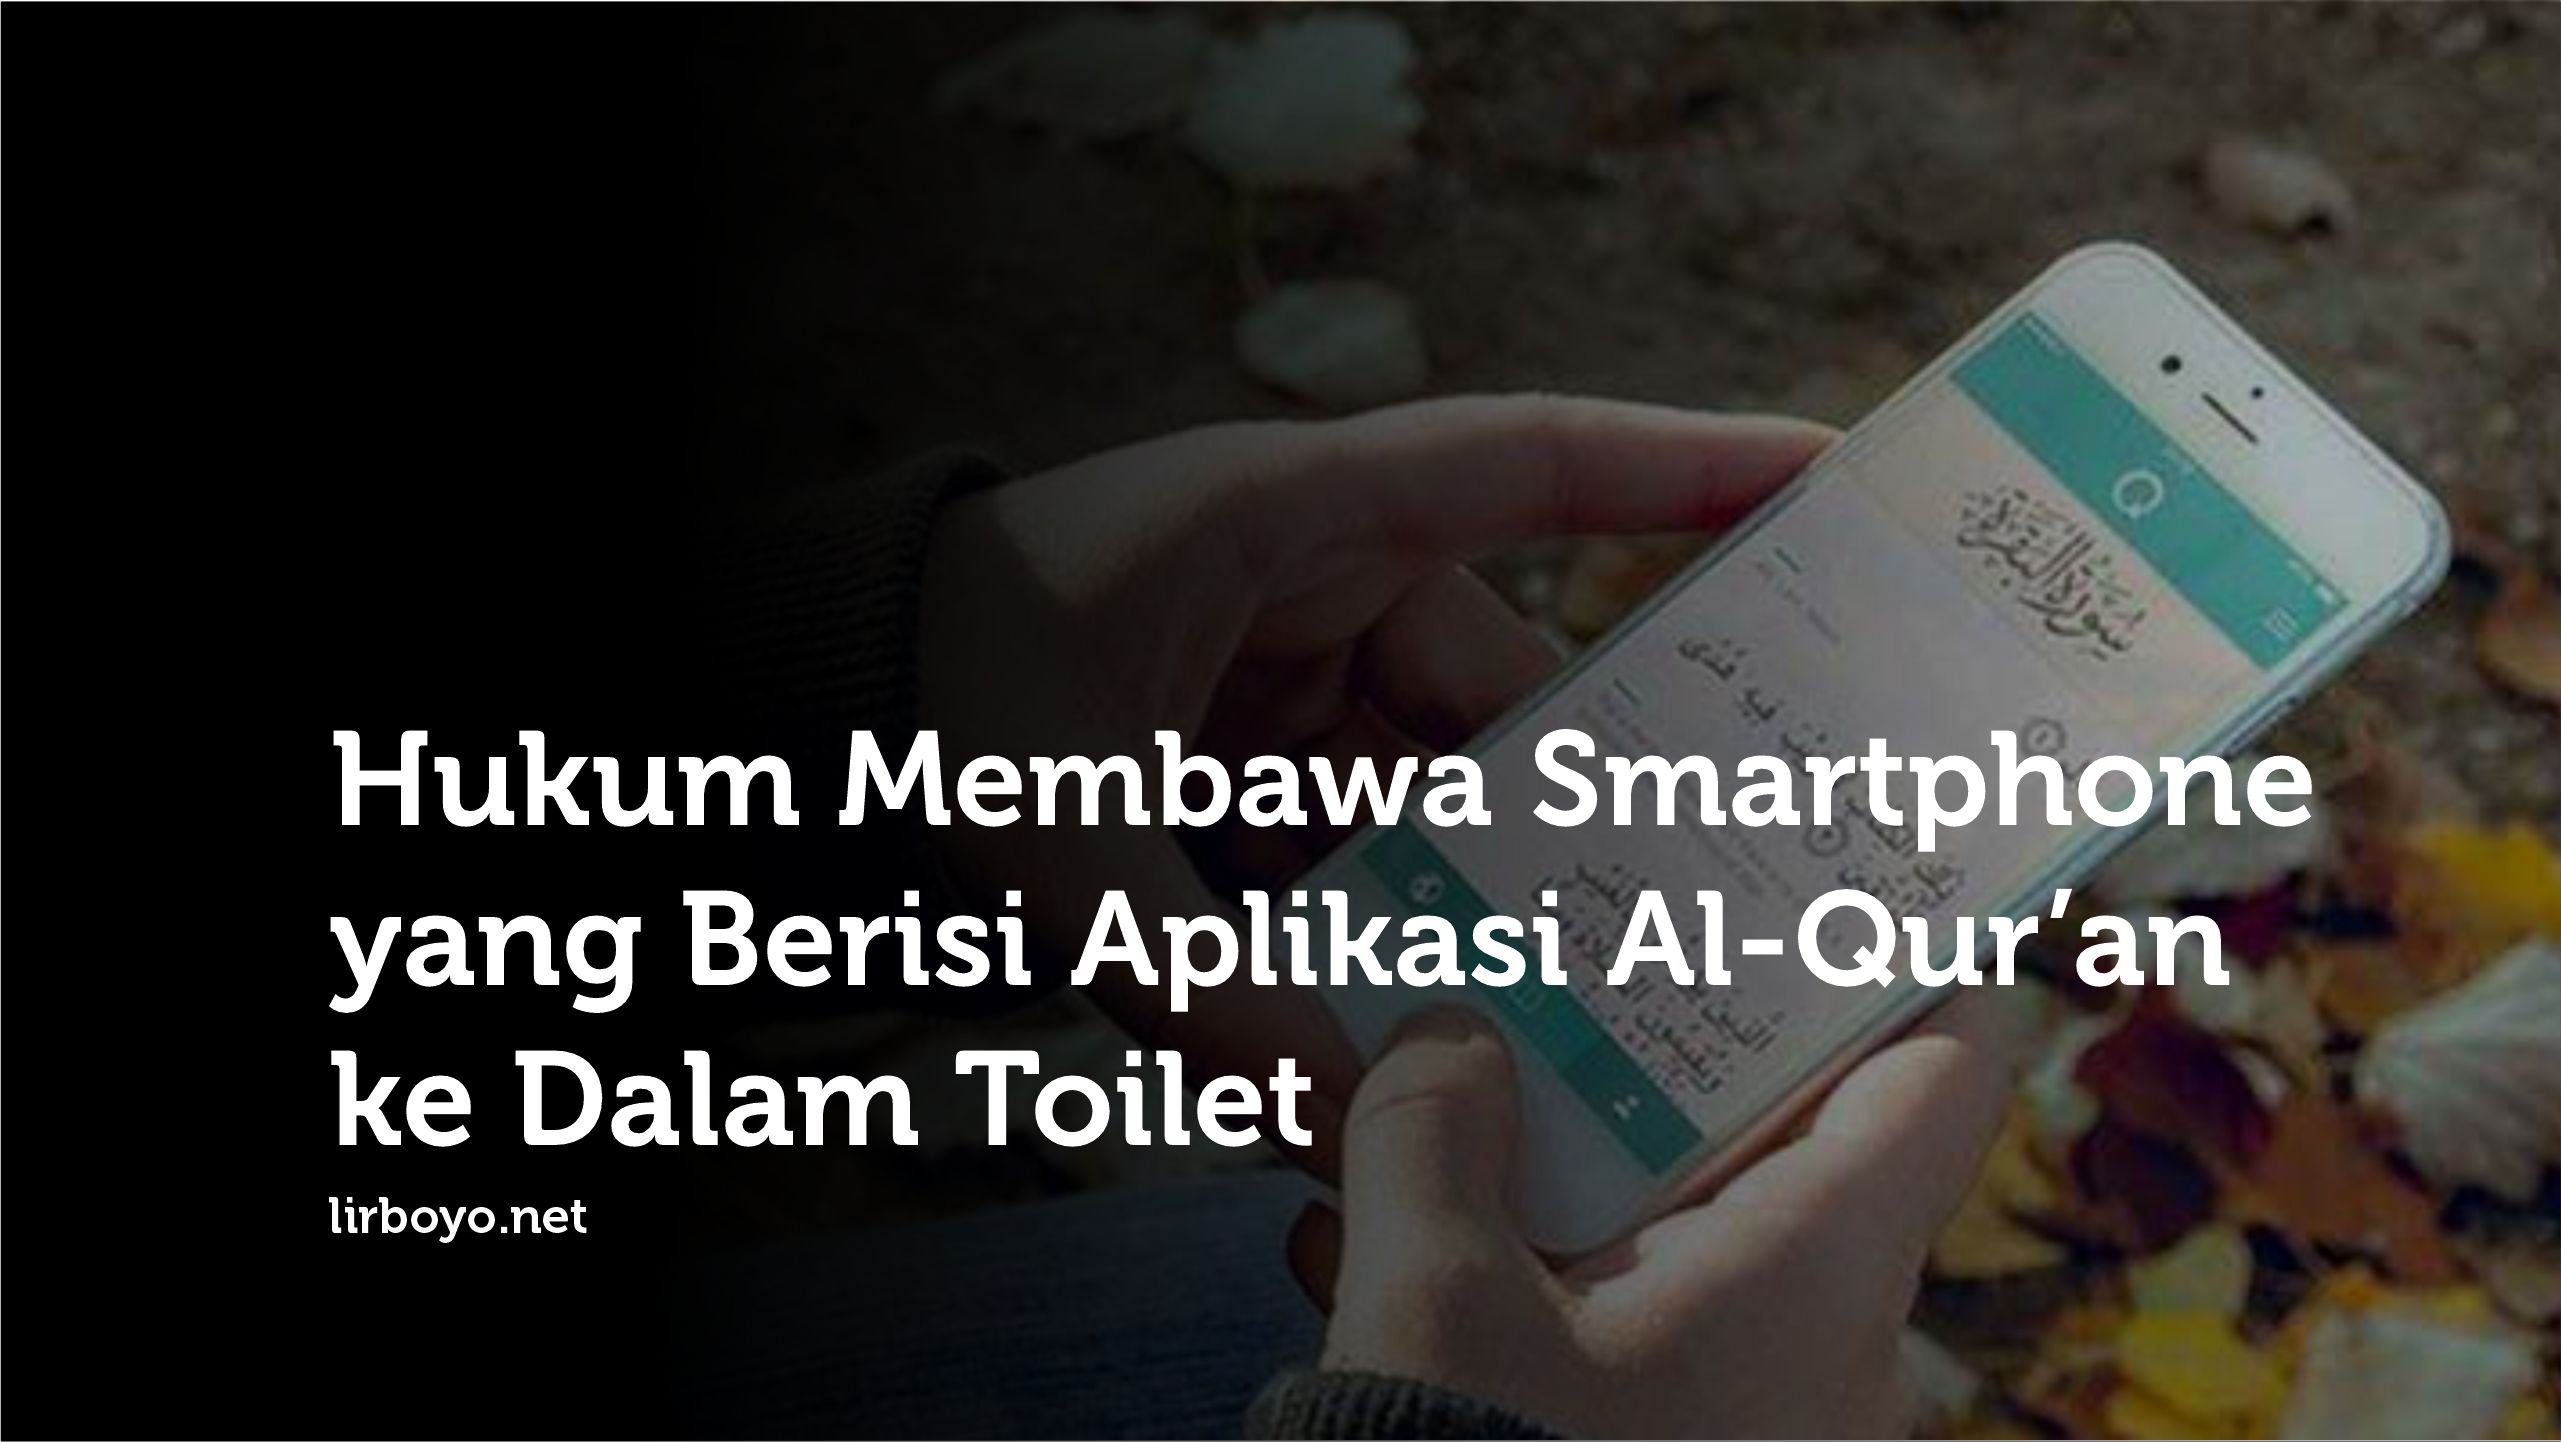 Hukum Membawa Smartphone Berisi Aplikasi Al-Qur'an ke Dalam Toilet